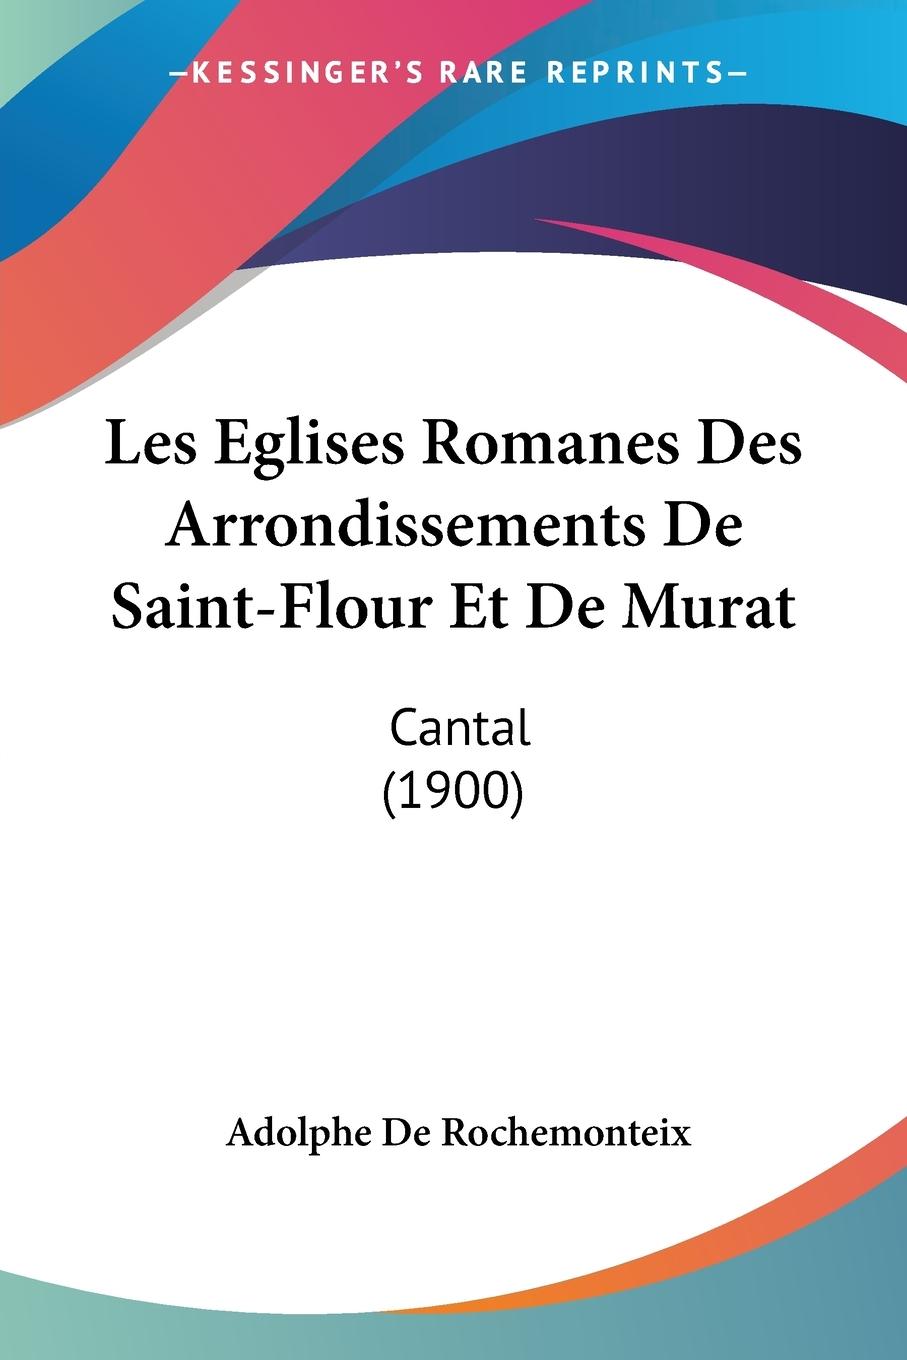 Les Eglises Romanes Des Arrondissements De Saint-Flour Et De Murat - De Rochemonteix, Adolphe